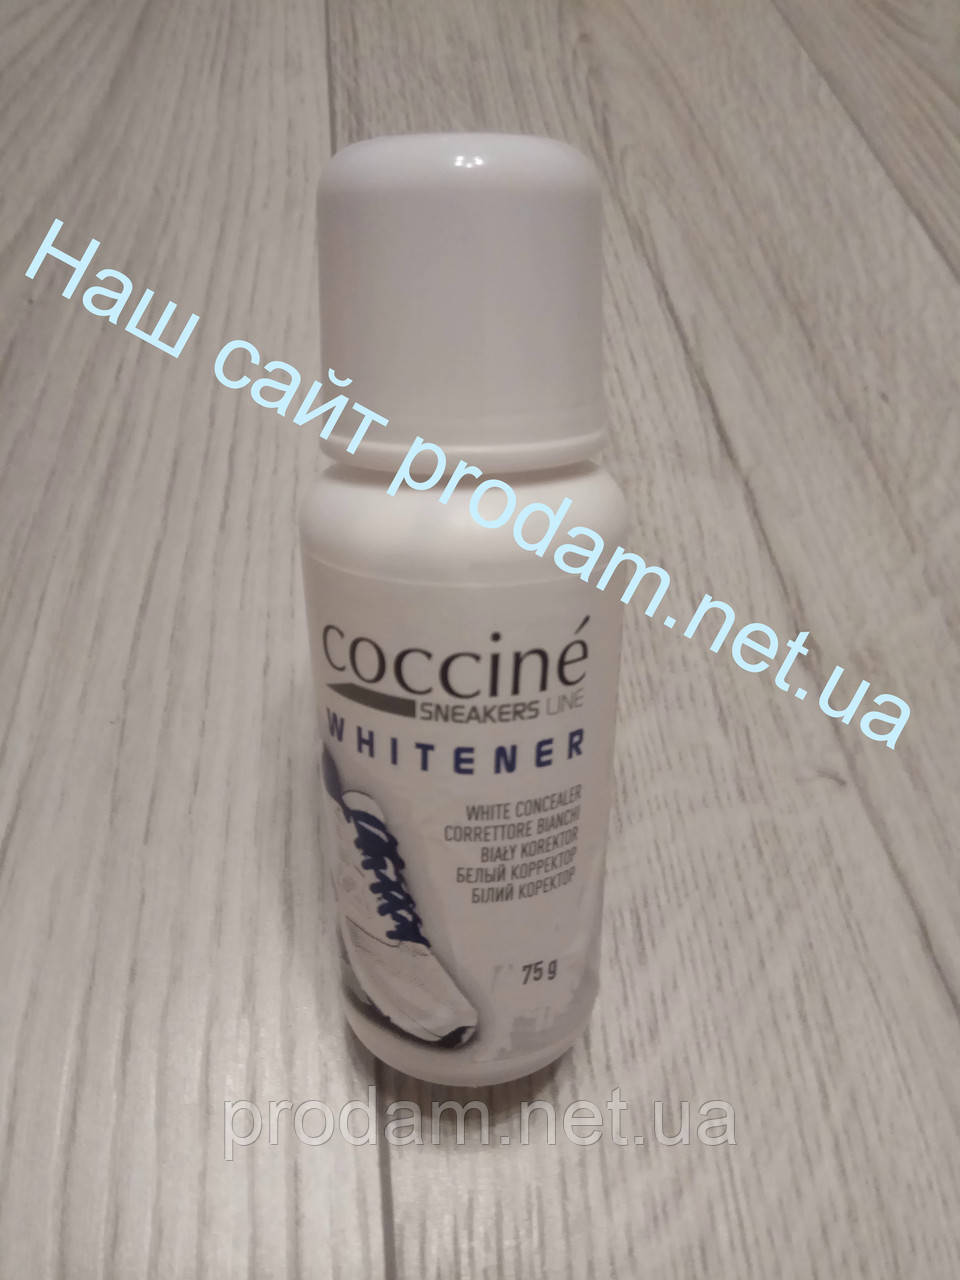 Біла крем-фарба для гладкої шкіри  WHITENER 75 мл